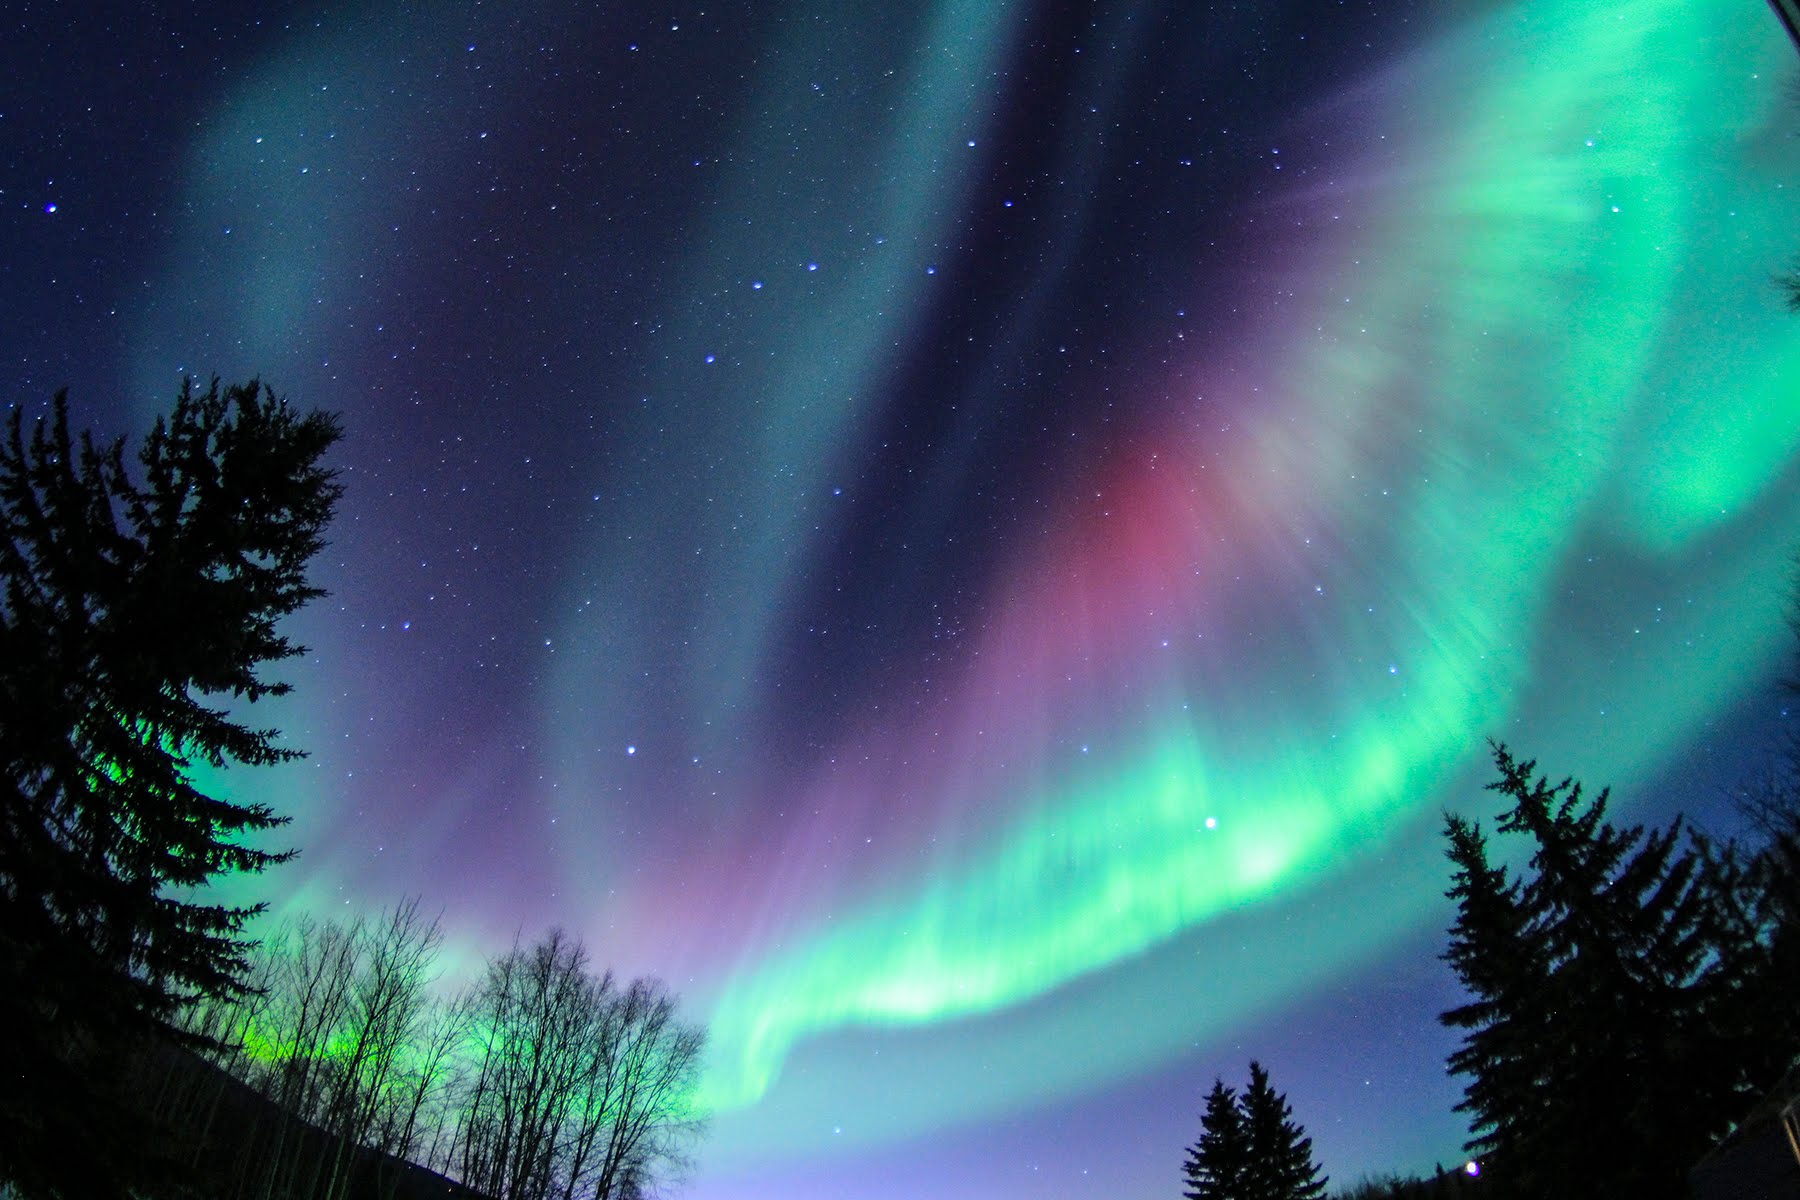 光之媚舞-罗弗敦群岛上空的北极光，挪威 (© arnaudbertrande/Getty Images) @20181229 | NiceBing 必应美图 - 精彩世界,一触即发